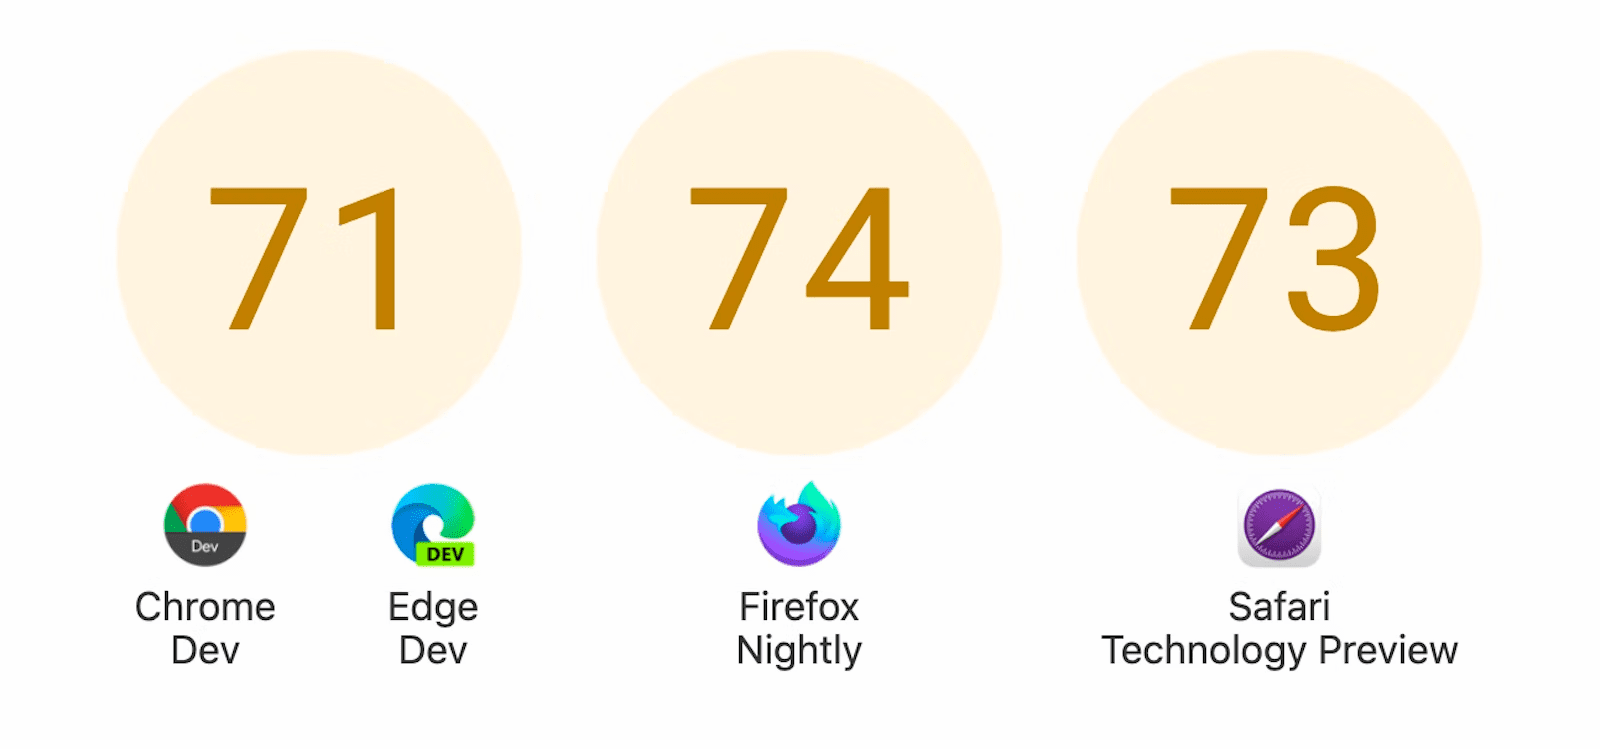 Hiển thị ba vòng tròn với điểm số: 71 cho Chrome Dev và Edge Dev, 74 cho Firefox Nightly và 73 cho Safari Technology Preview.